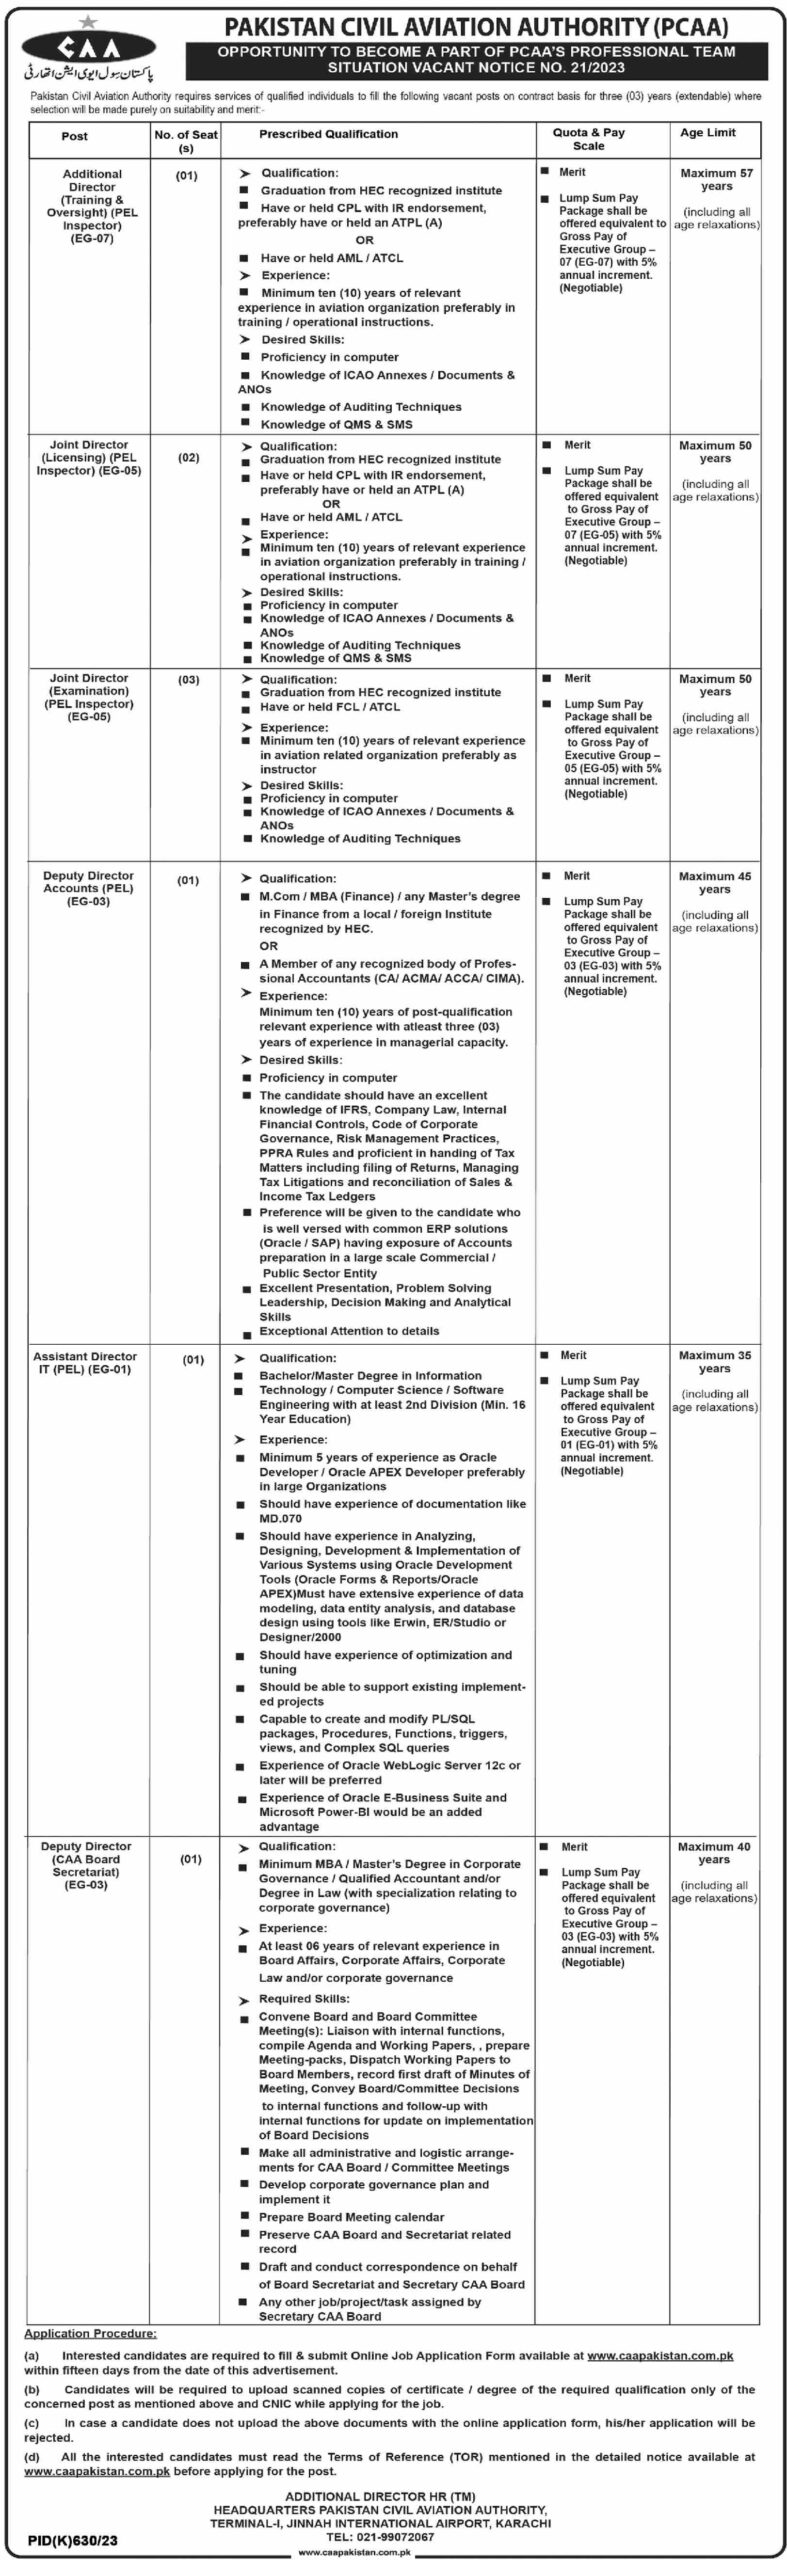 Pakistan Civil Aviation Authority (PCAA) Jobs 2023 - Opportunities in Karachi